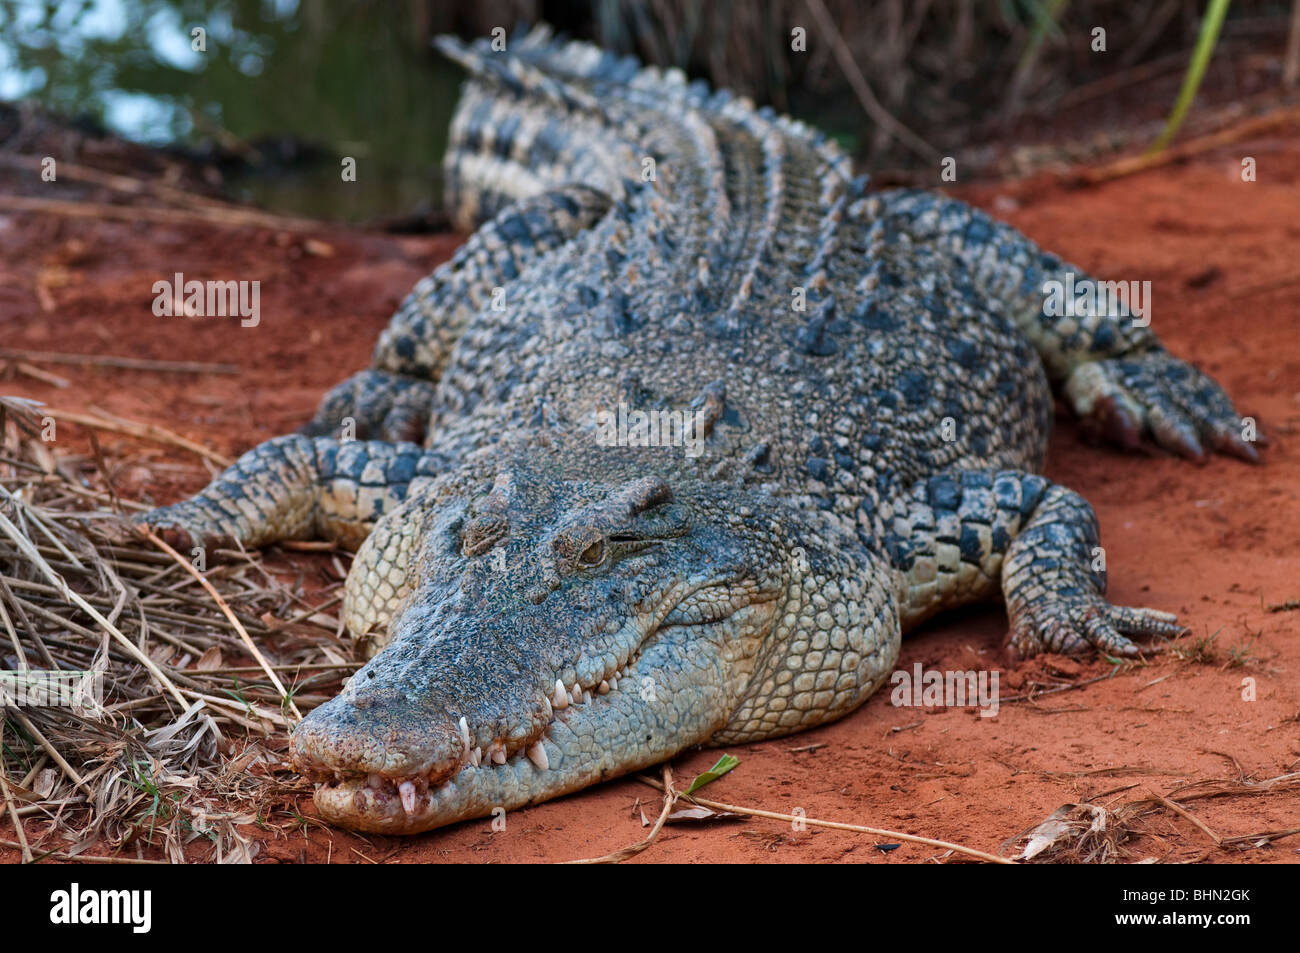 Cocodrilo australiano de agua salada, crocodylis porosus fotografiado en Broome, Australia Occidental Foto de stock